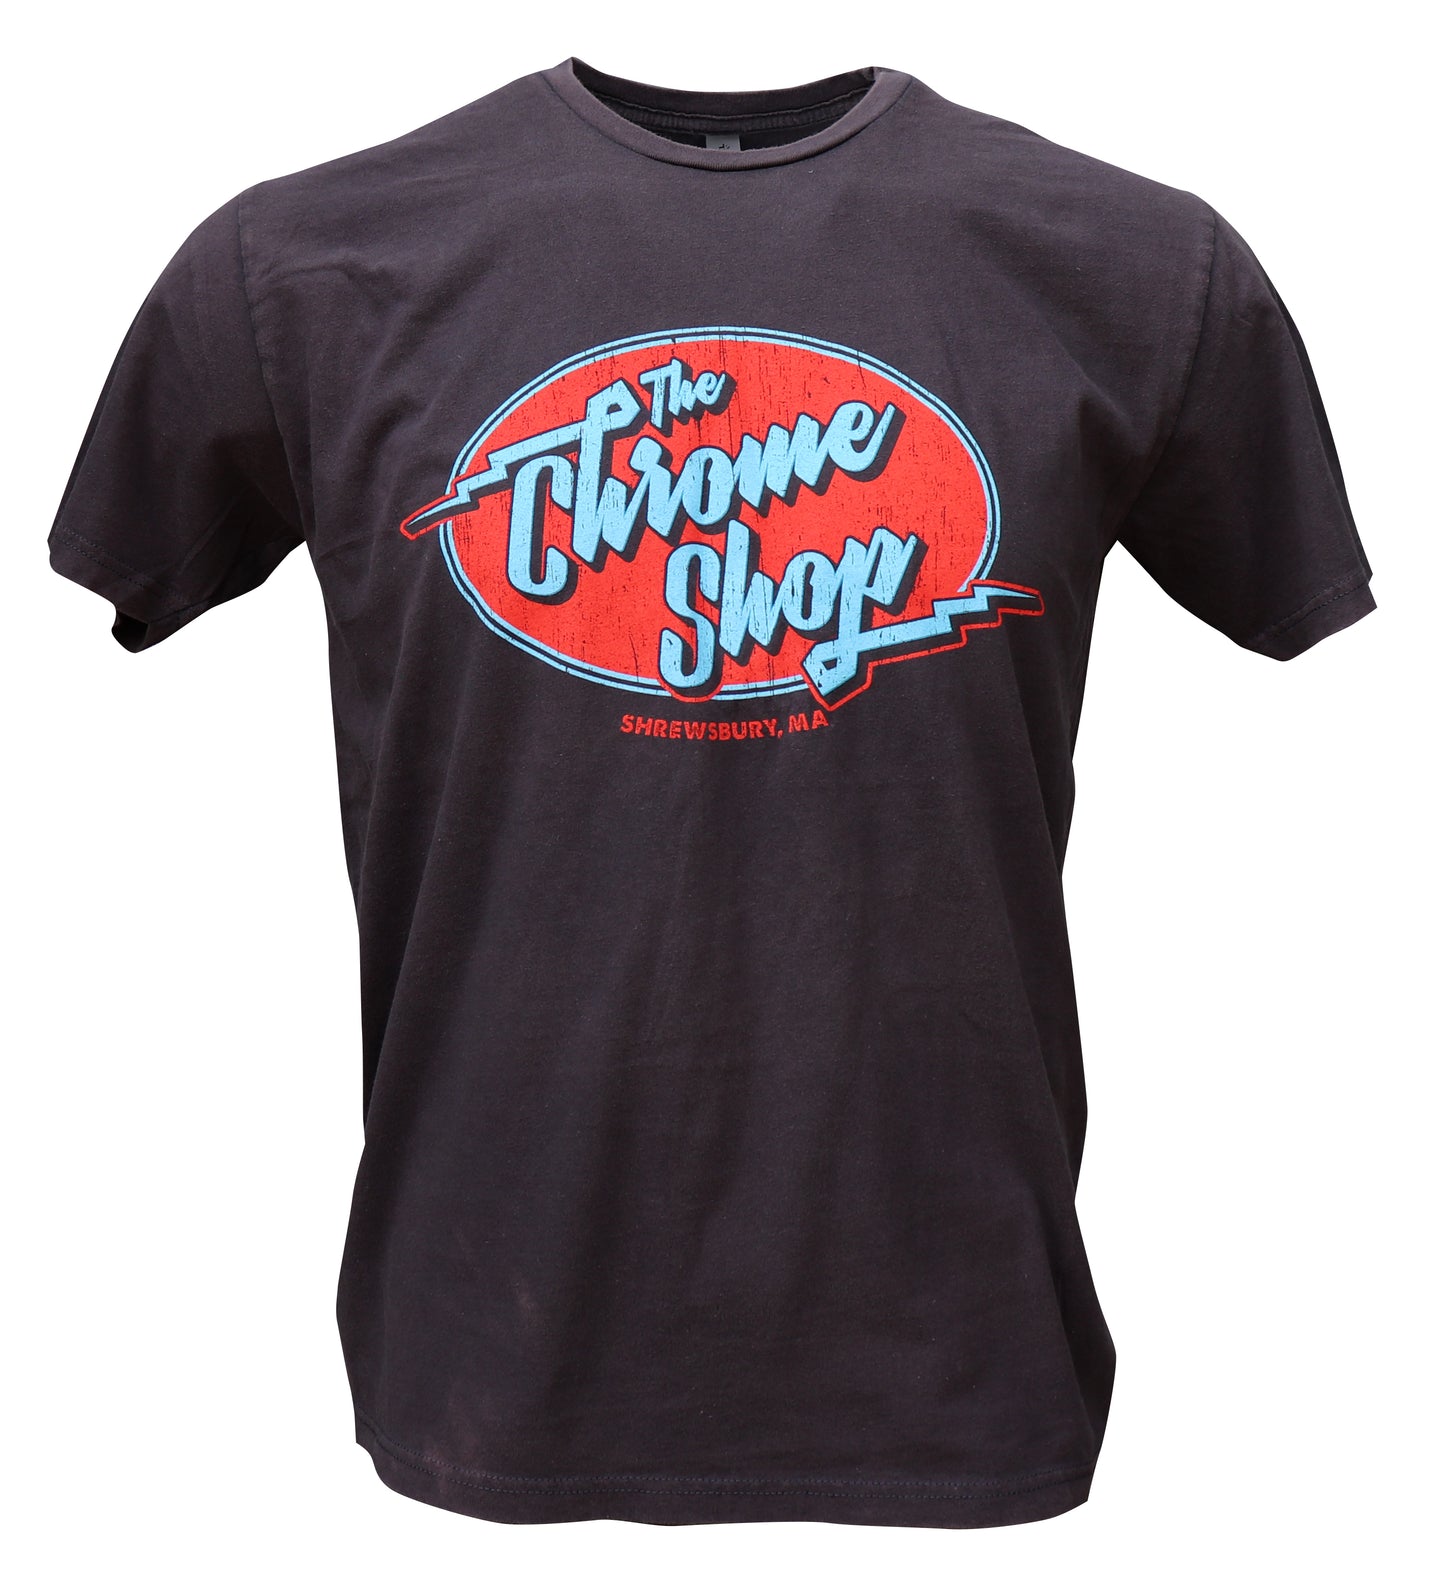 The Chrome Shop Retro Graphic T-Shirt